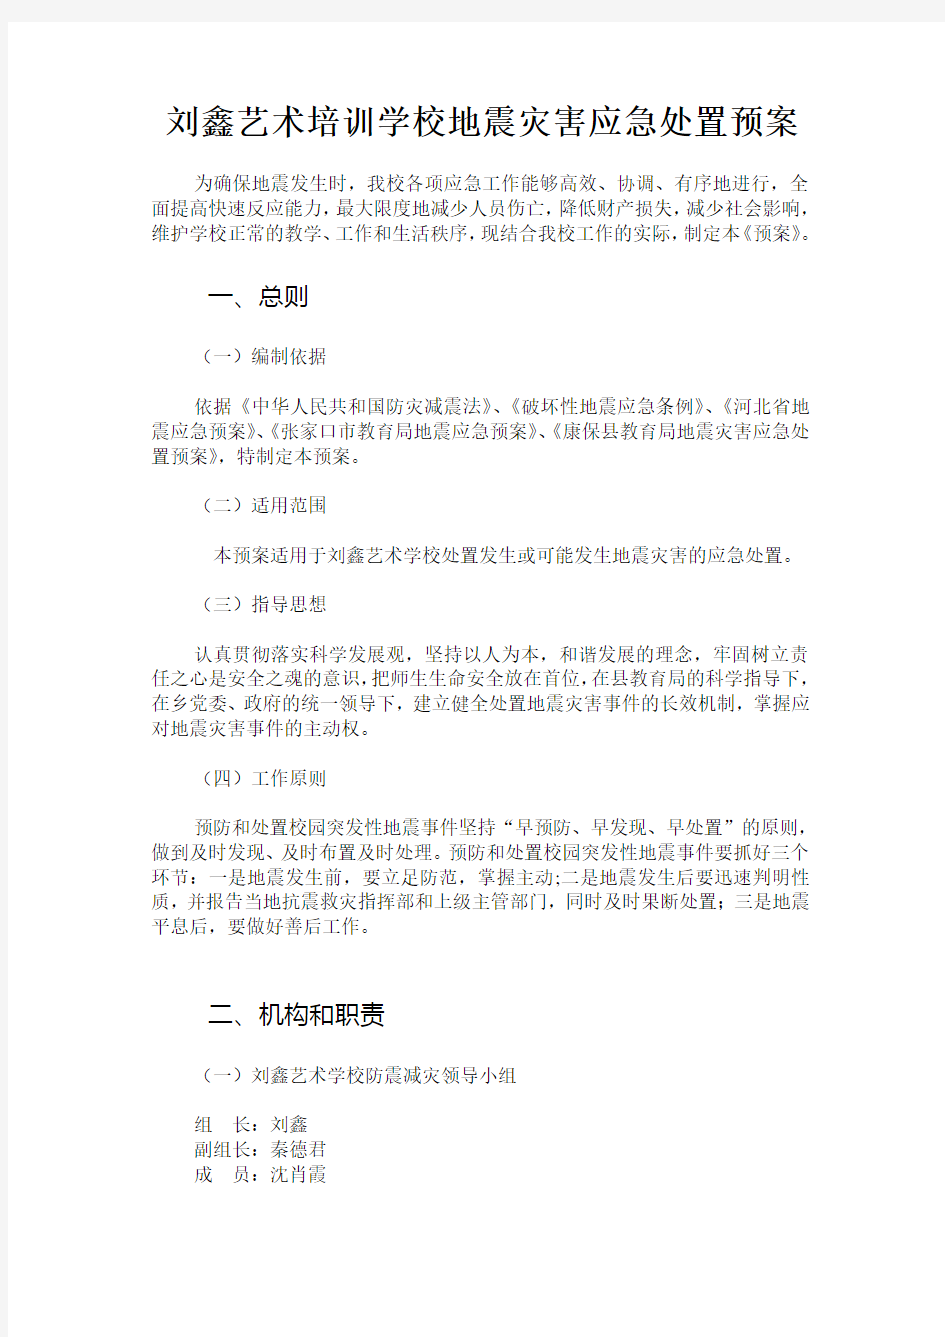 刘鑫艺术培训学校地震应急预案